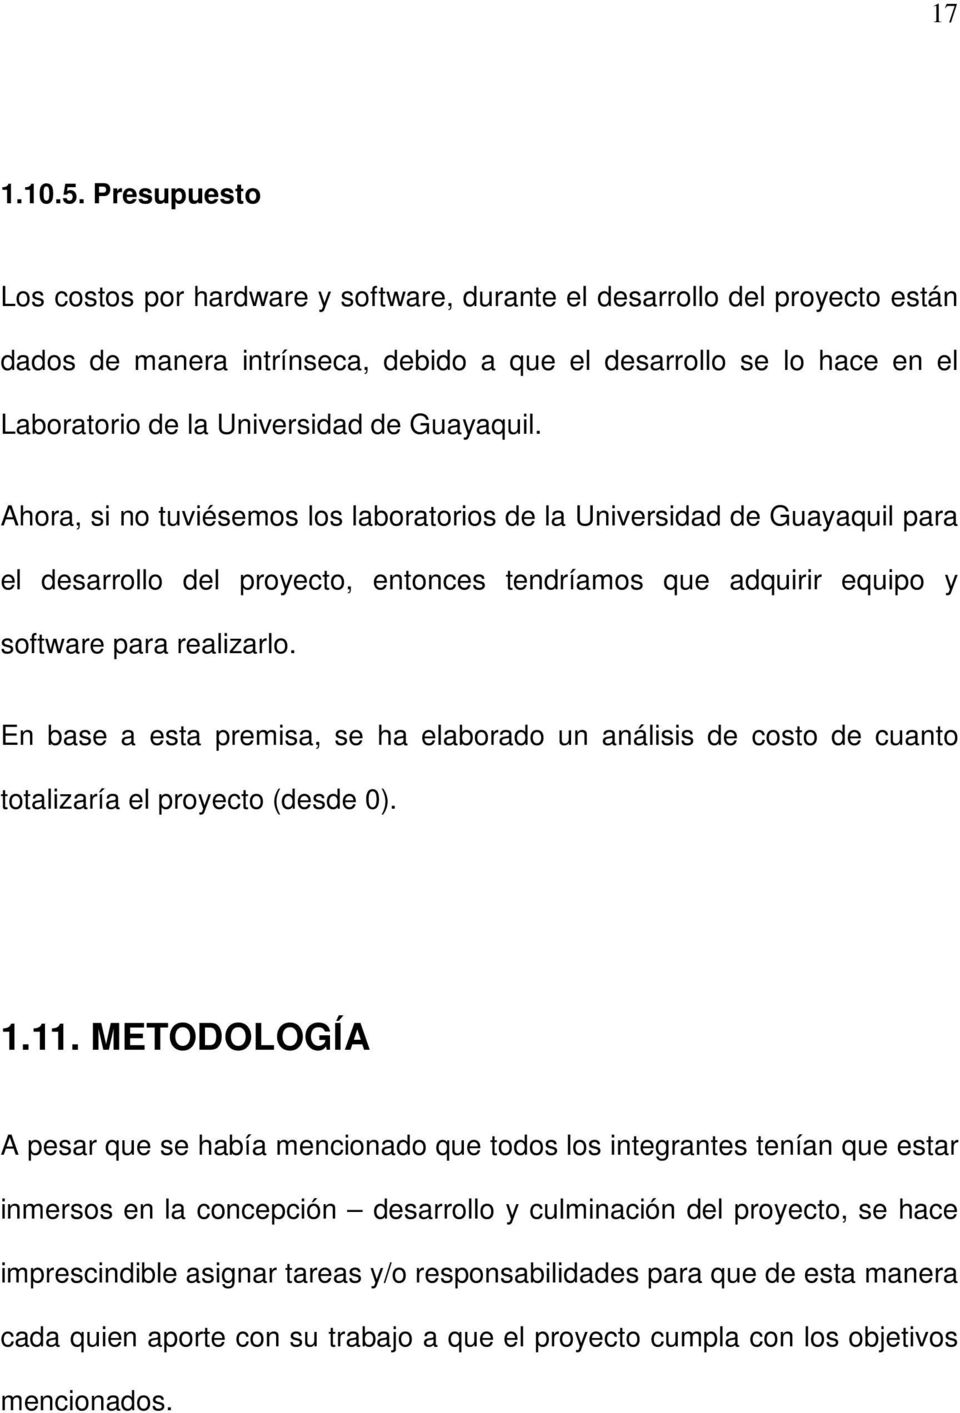 Guayaquil. Ahora, si no tuviésemos los laboratorios de la Universidad de Guayaquil para el desarrollo del proyecto, entonces tendríamos que adquirir equipo y software para realizarlo.